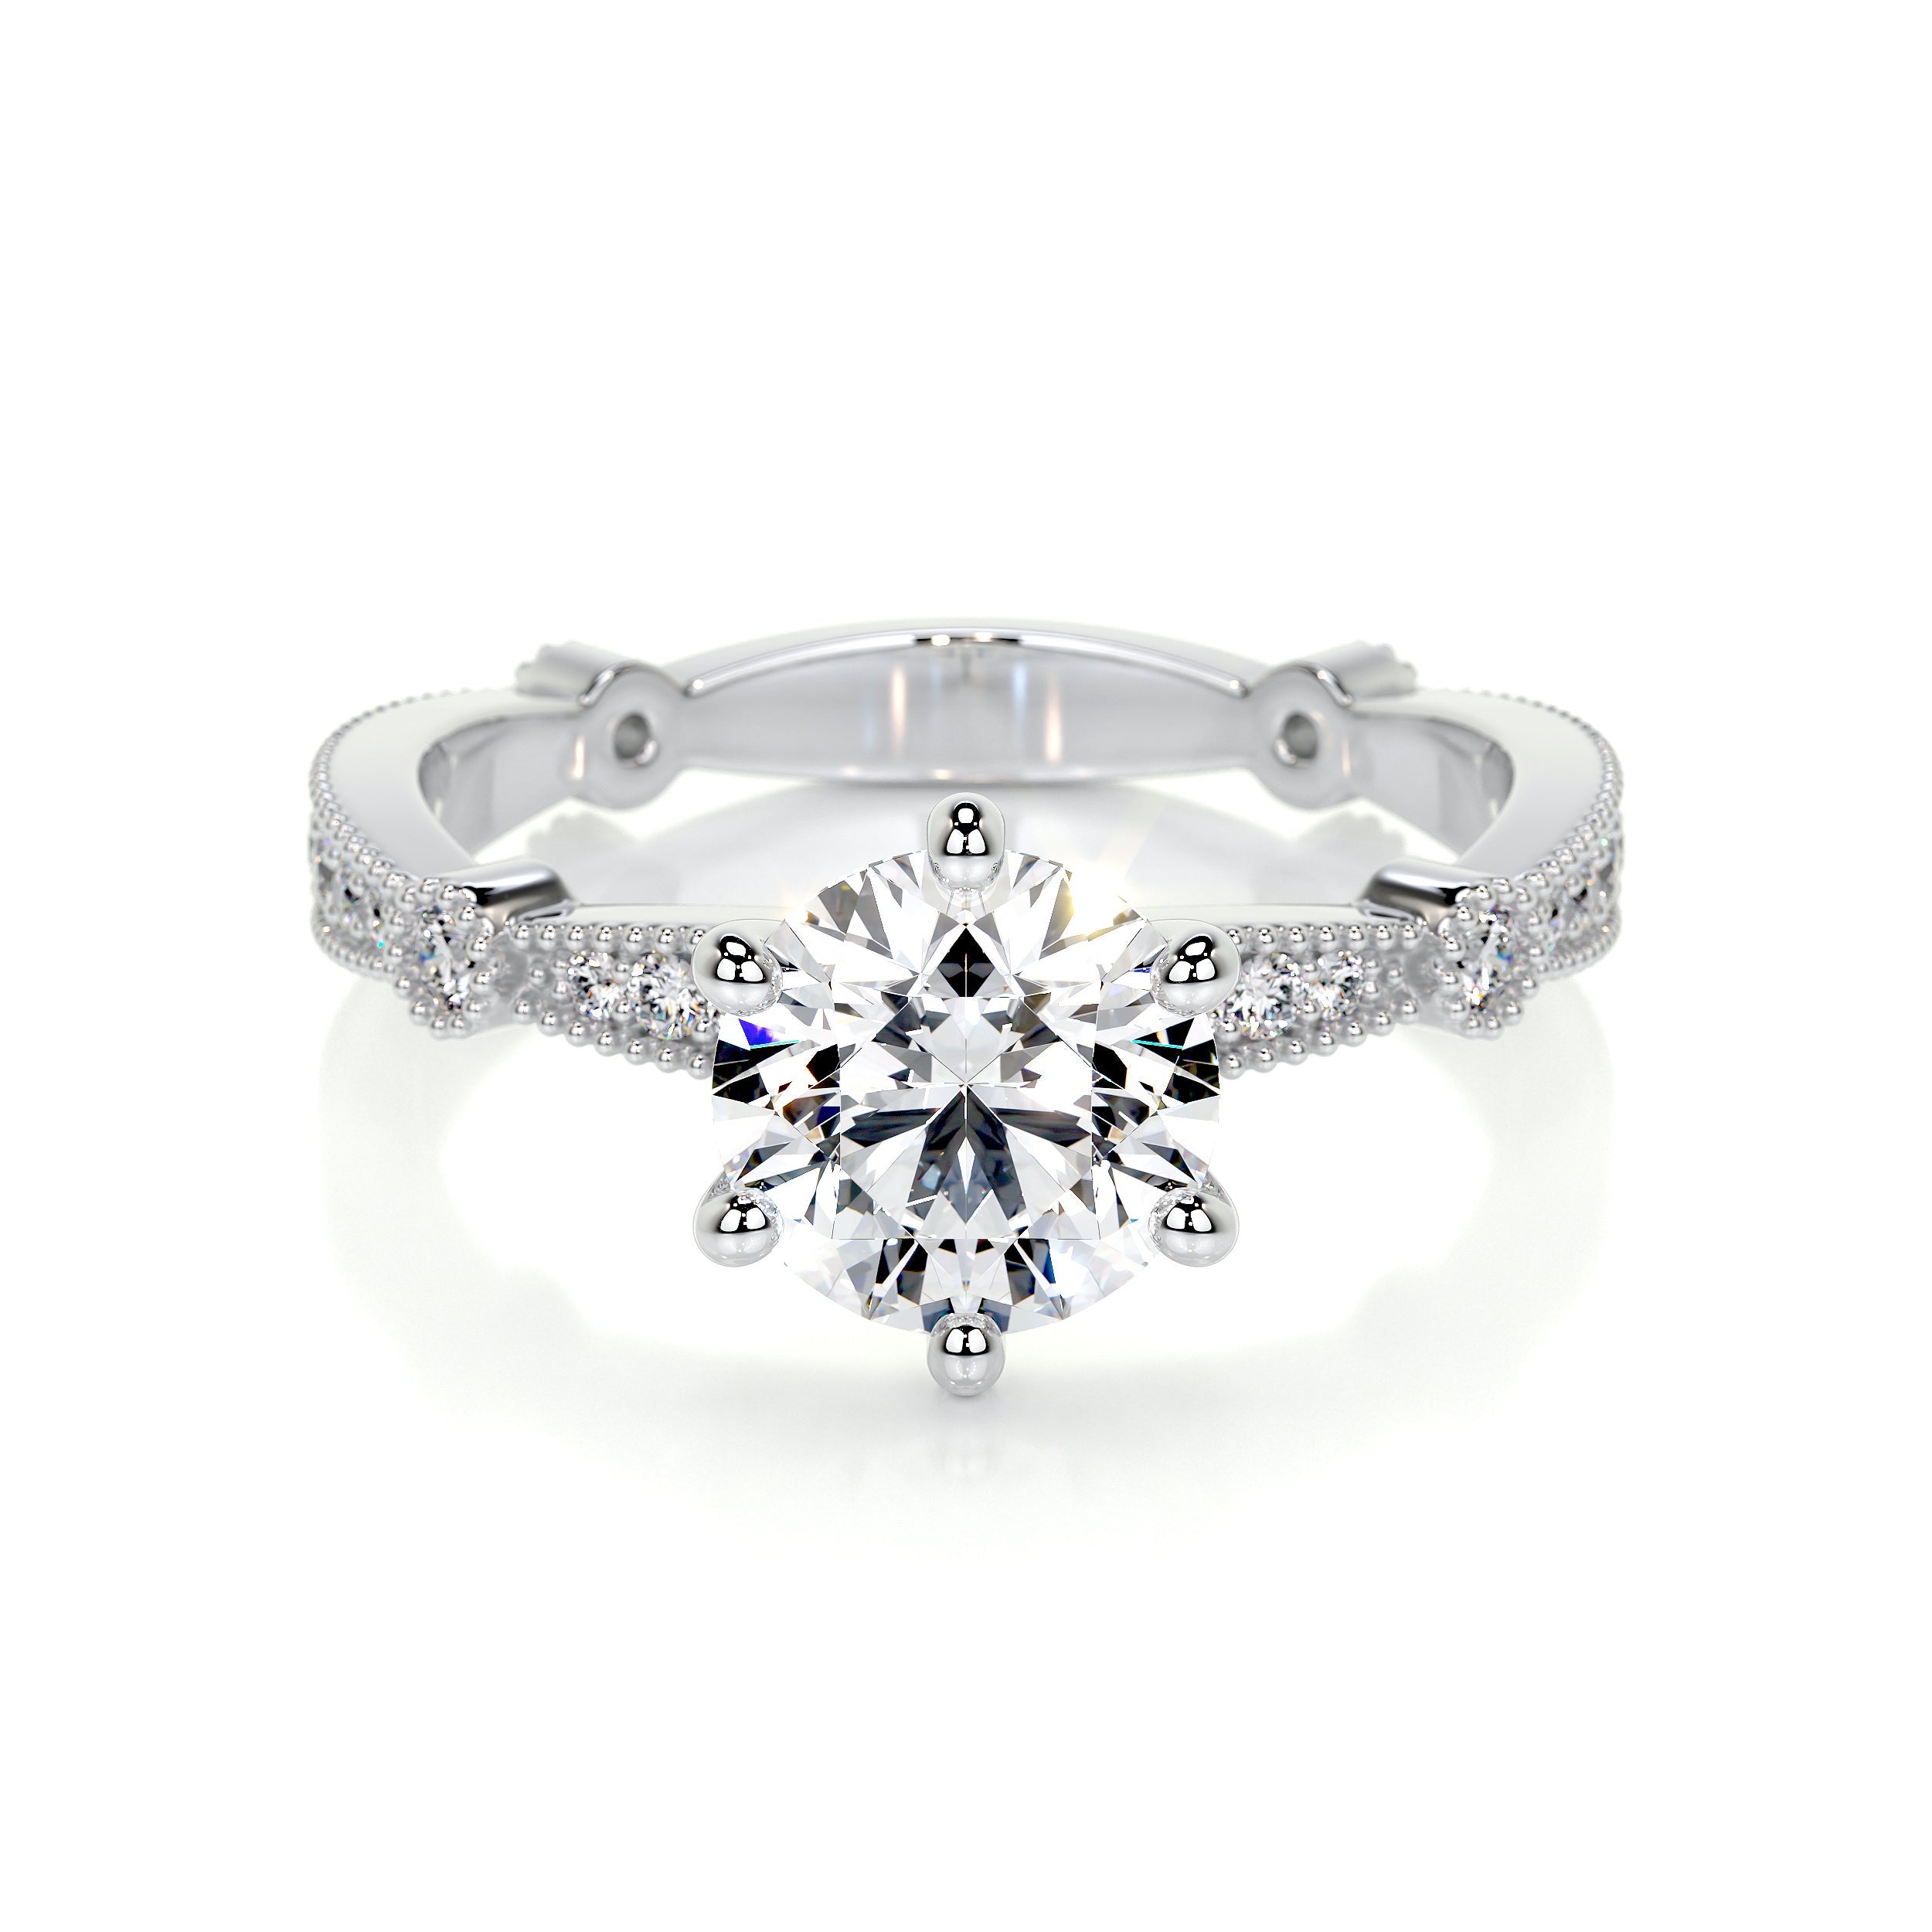 Amelia Lab Grown Diamond Ring   (2 Carat) - Platinum